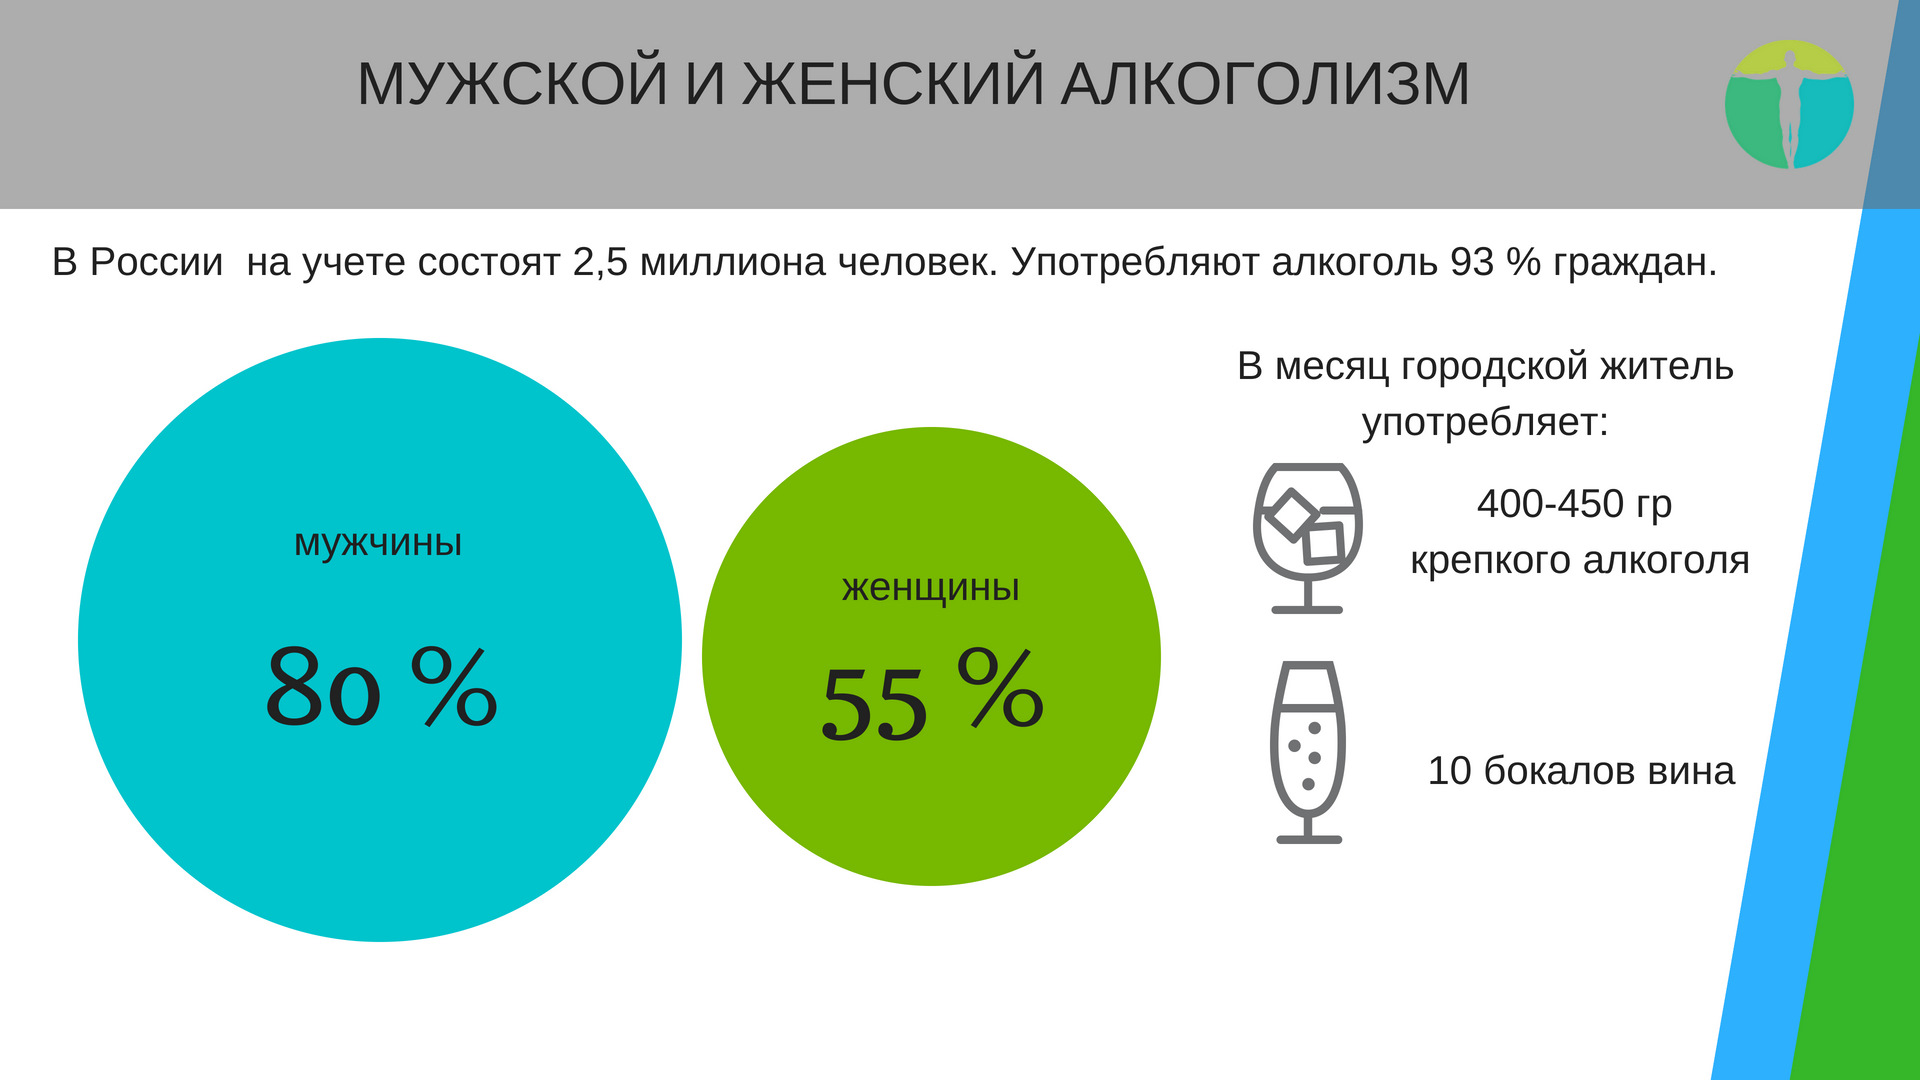 Статистика алкоголизма в России